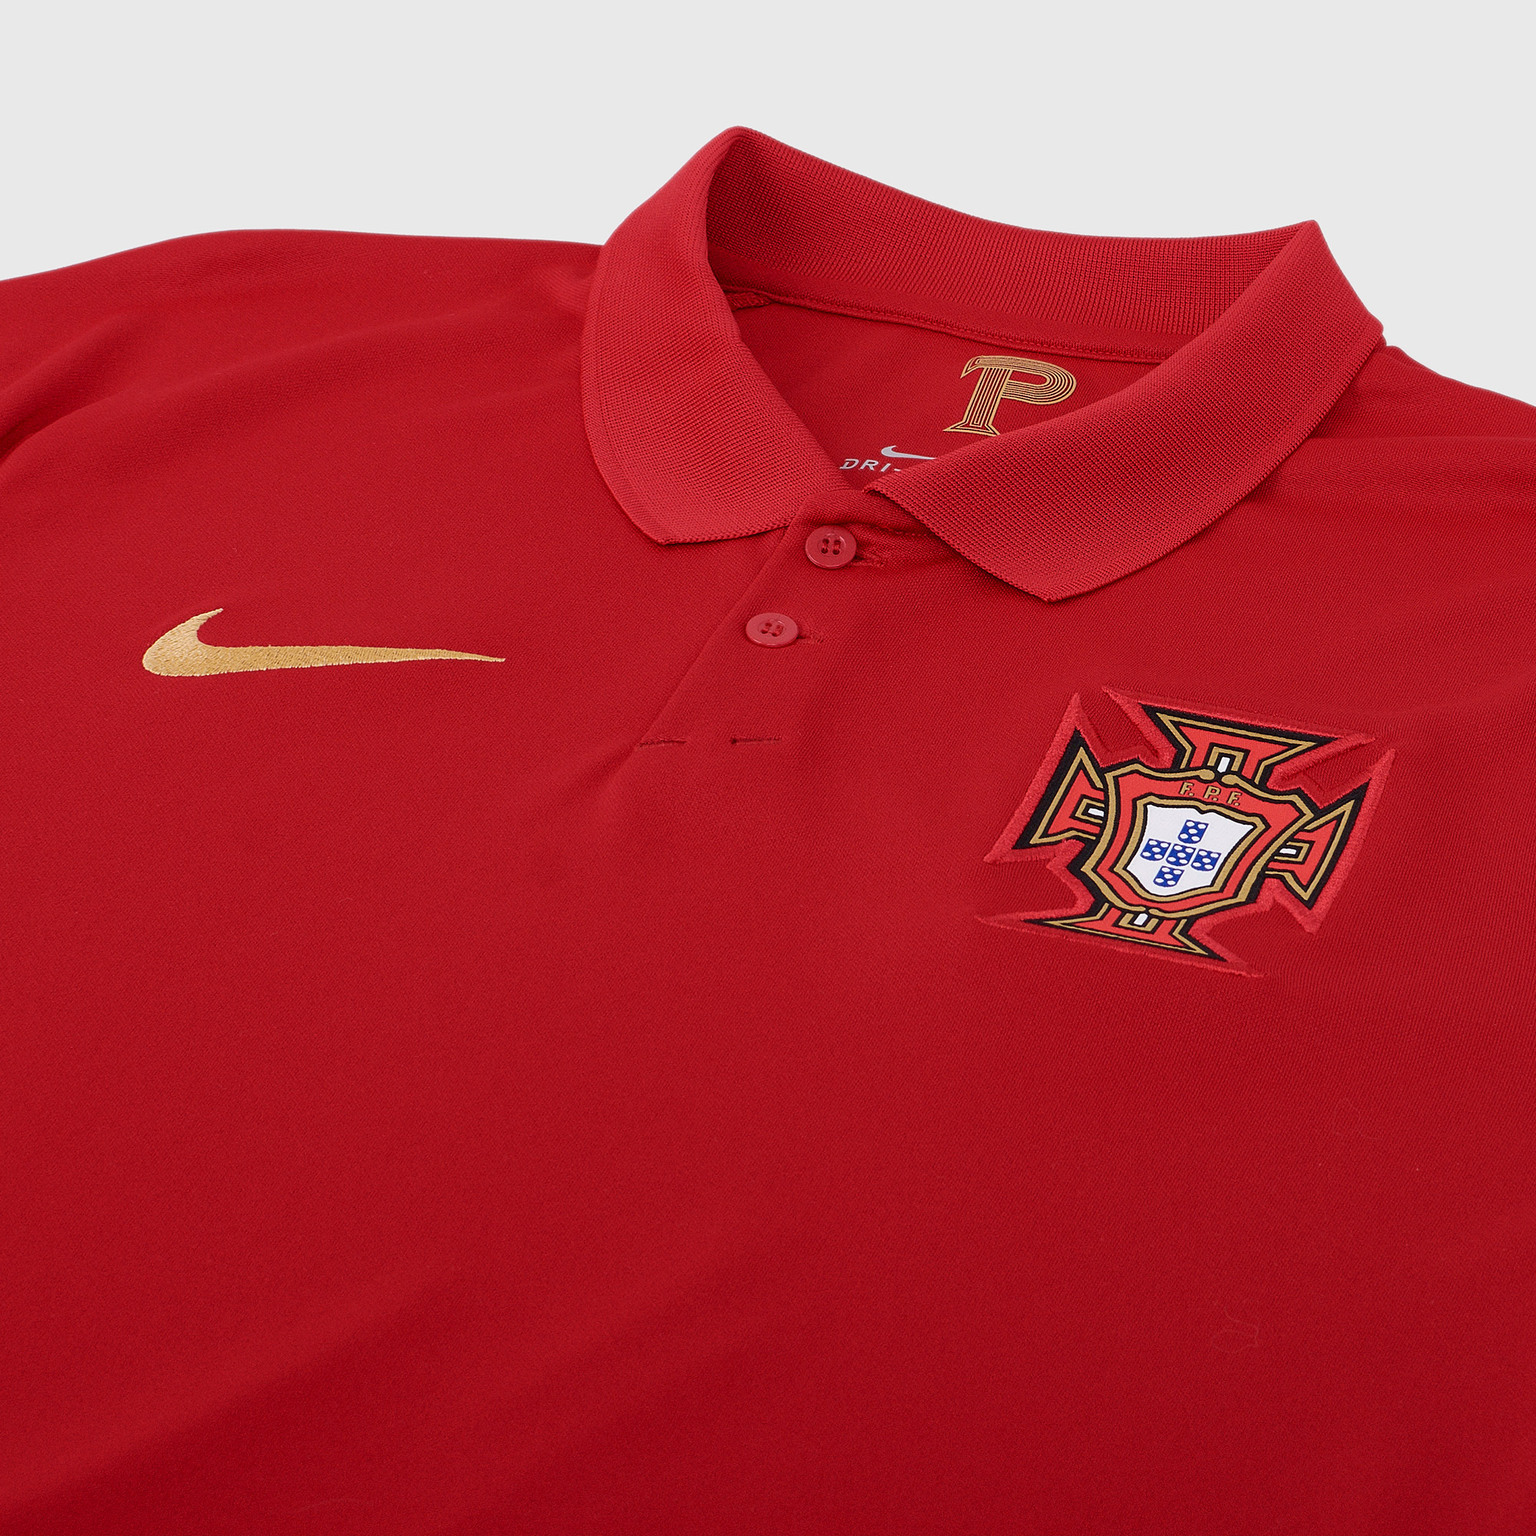 Футболка игровая домашняя Nike сборной Португалии сезон 2020/21